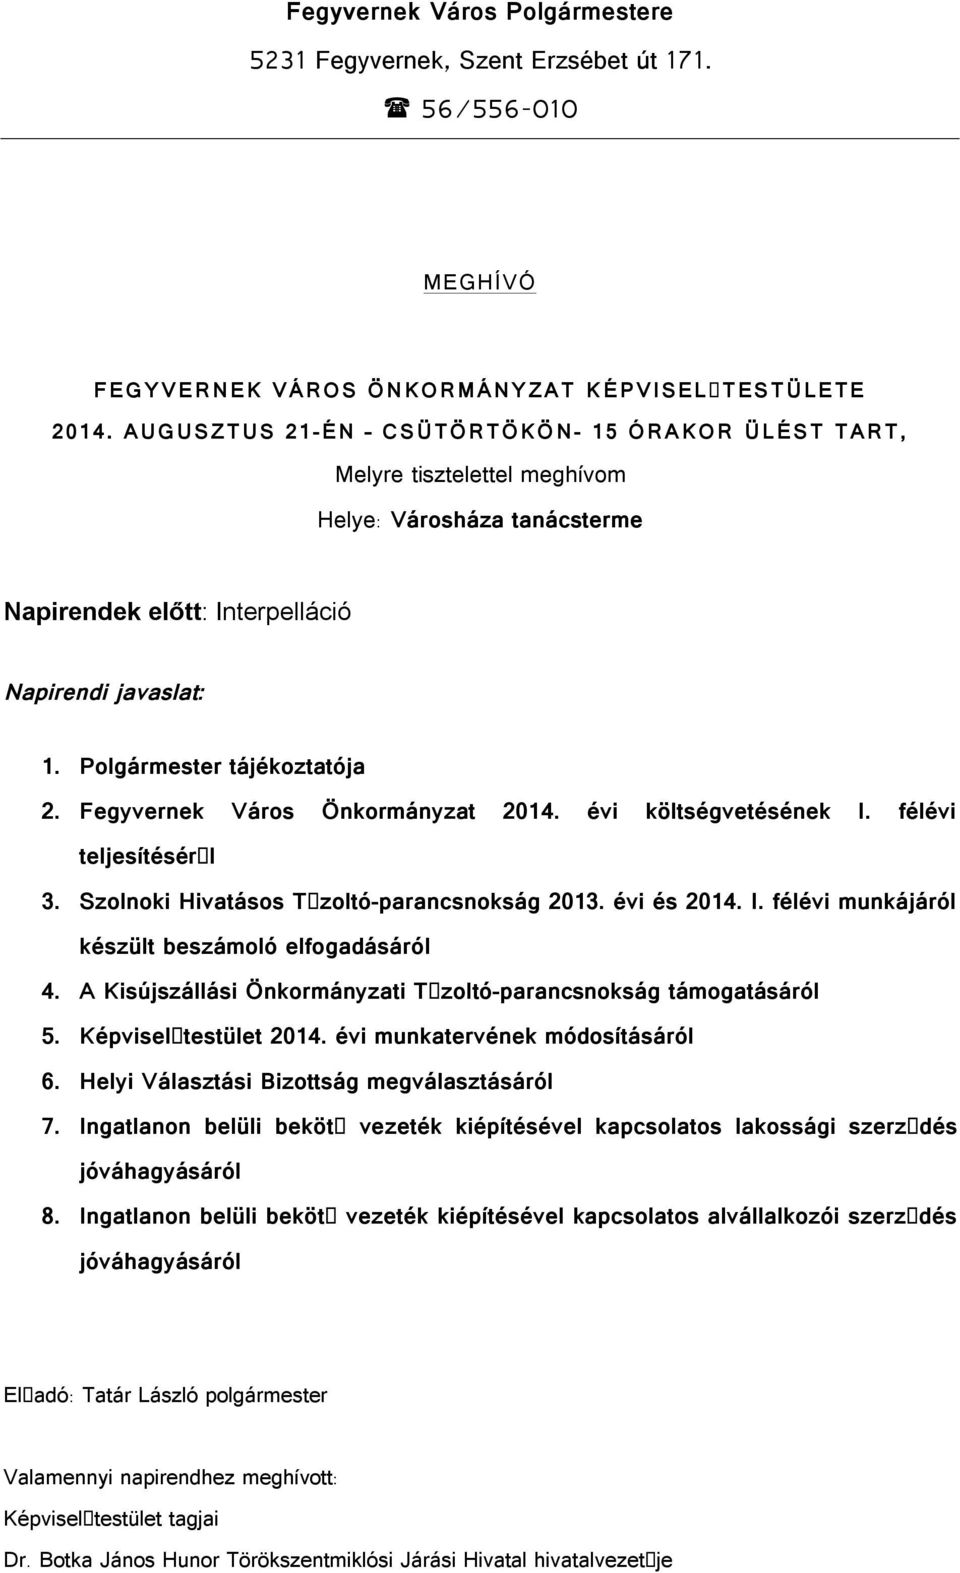 Fegyvernek Város Önkormányzat 2014. évi költségvetésének I. félévi teljesítésér l 3. Szolnoki Hivatásos T zoltó-parancsnokság 2013. évi és 2014. I. félévi munkájáról készült beszámoló elfogadásáról 4.